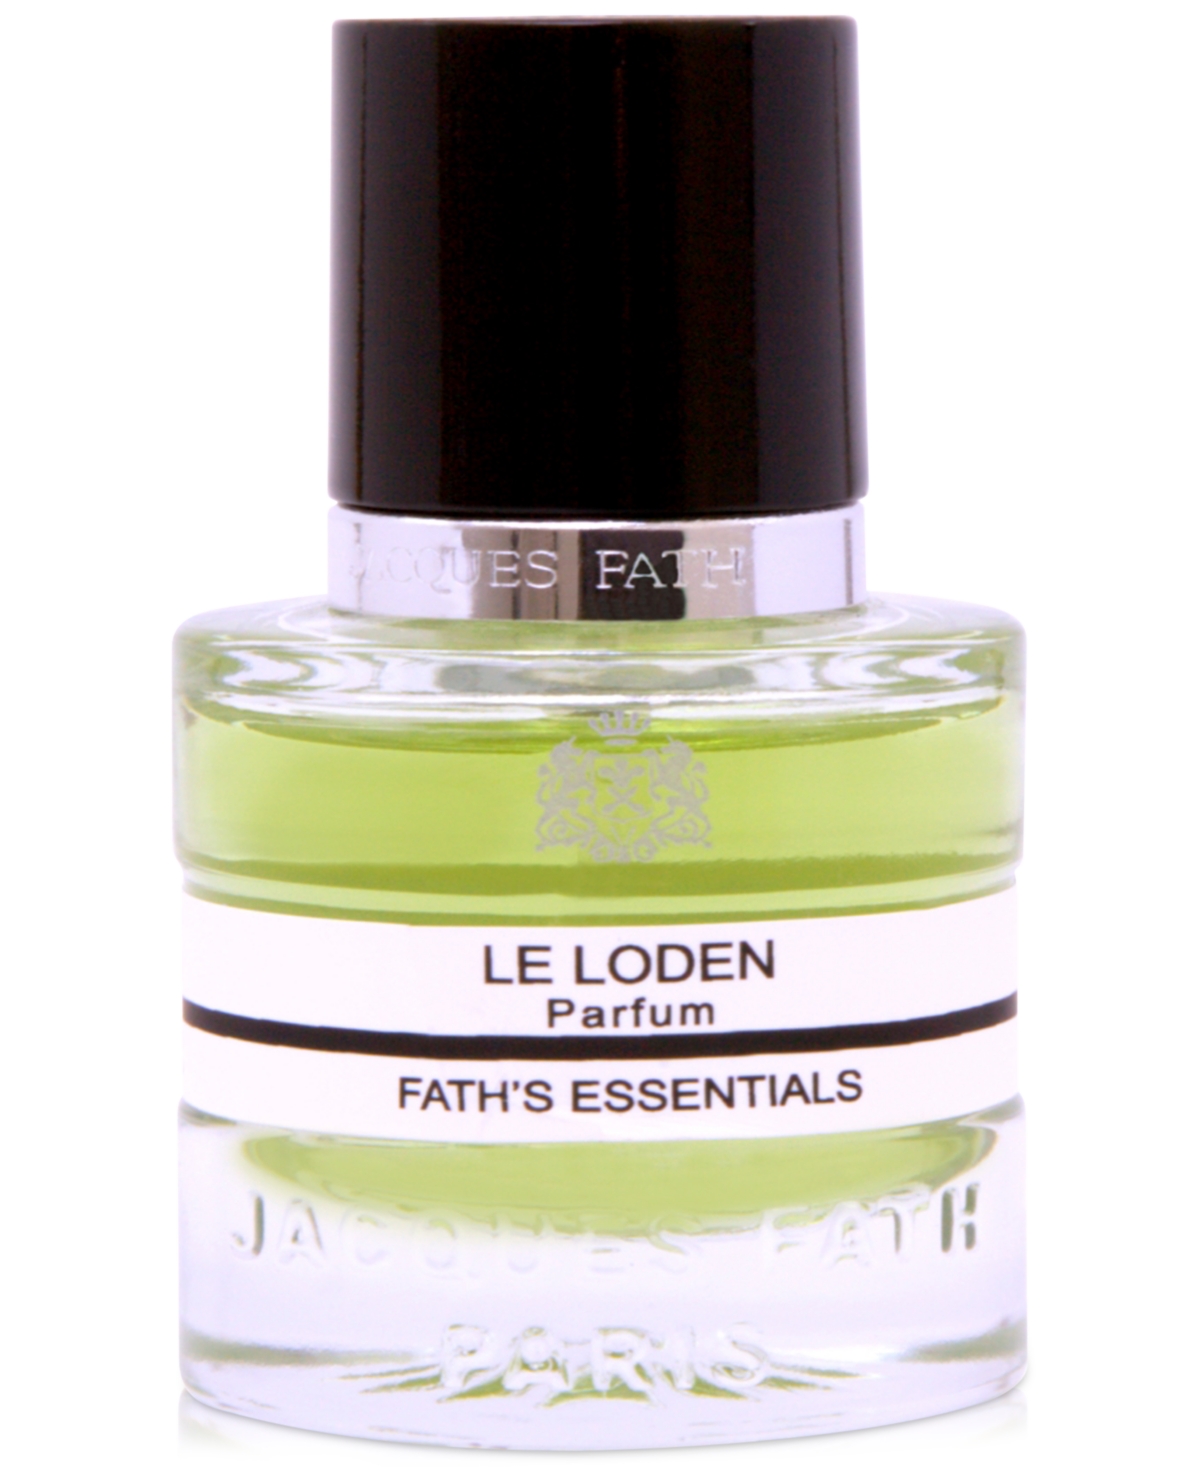 Le Loden Parfum, 0.5 oz.